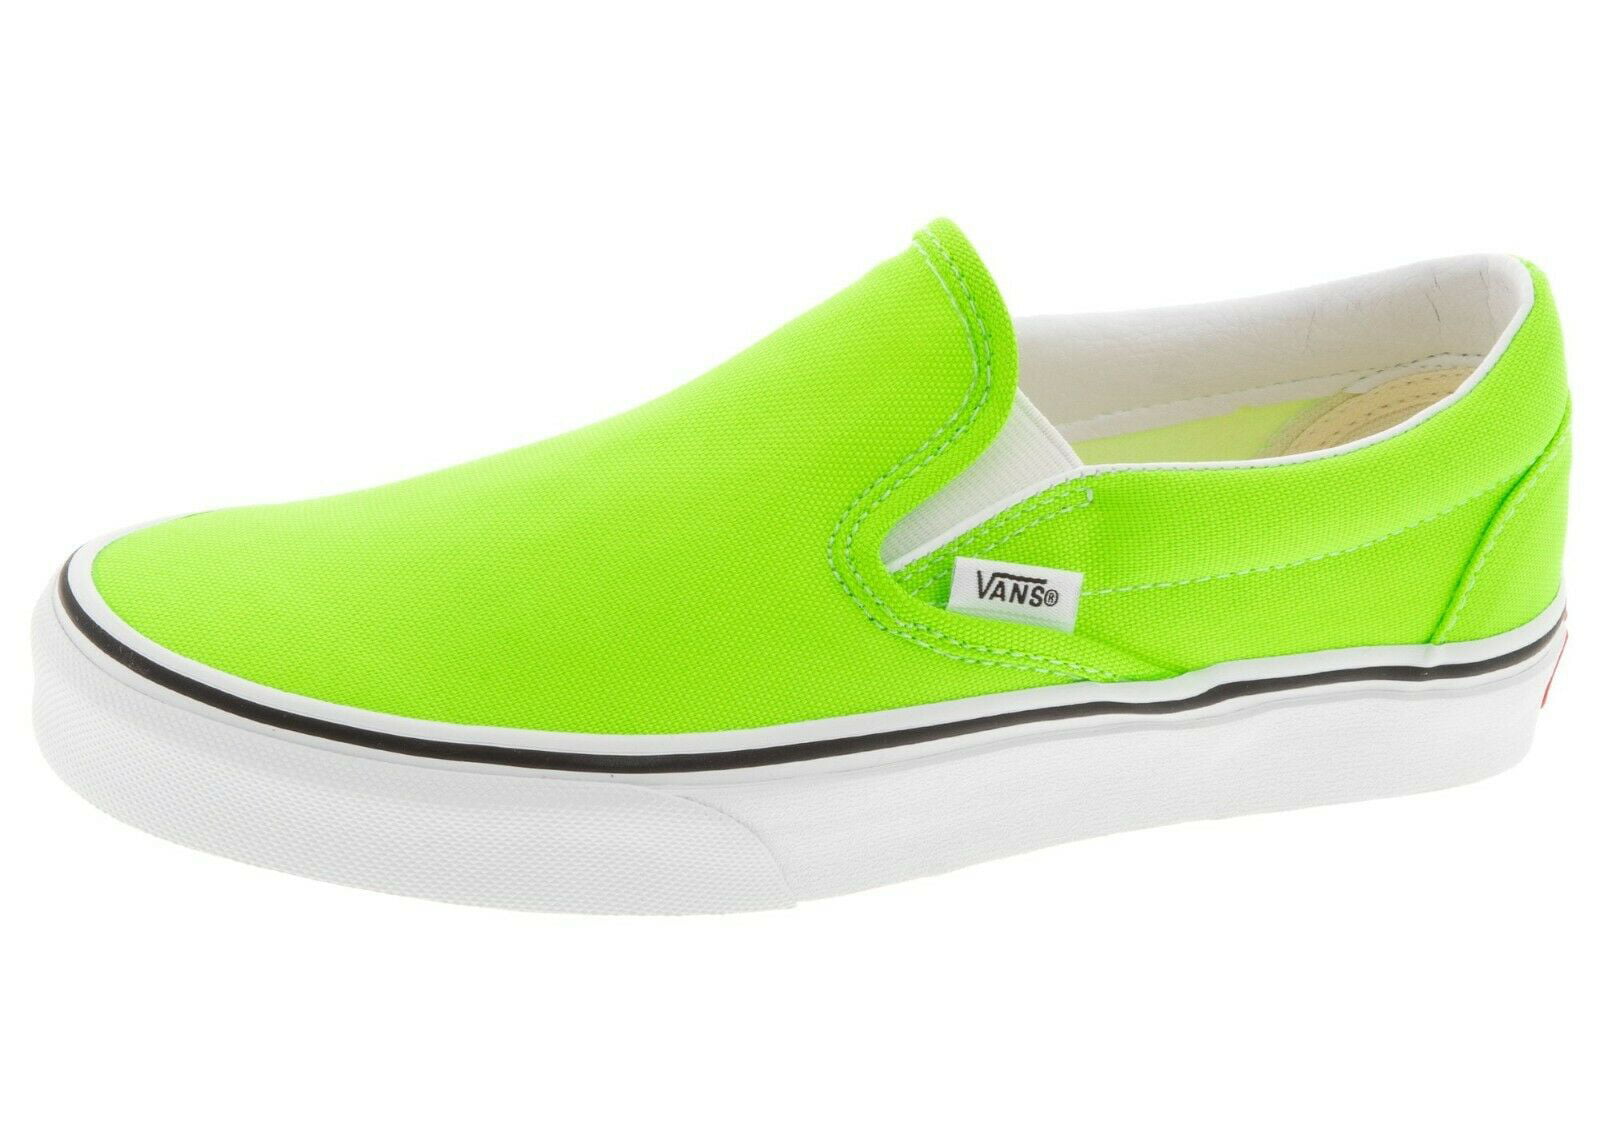 Vans Classic Slip On Neon Green Gecko 